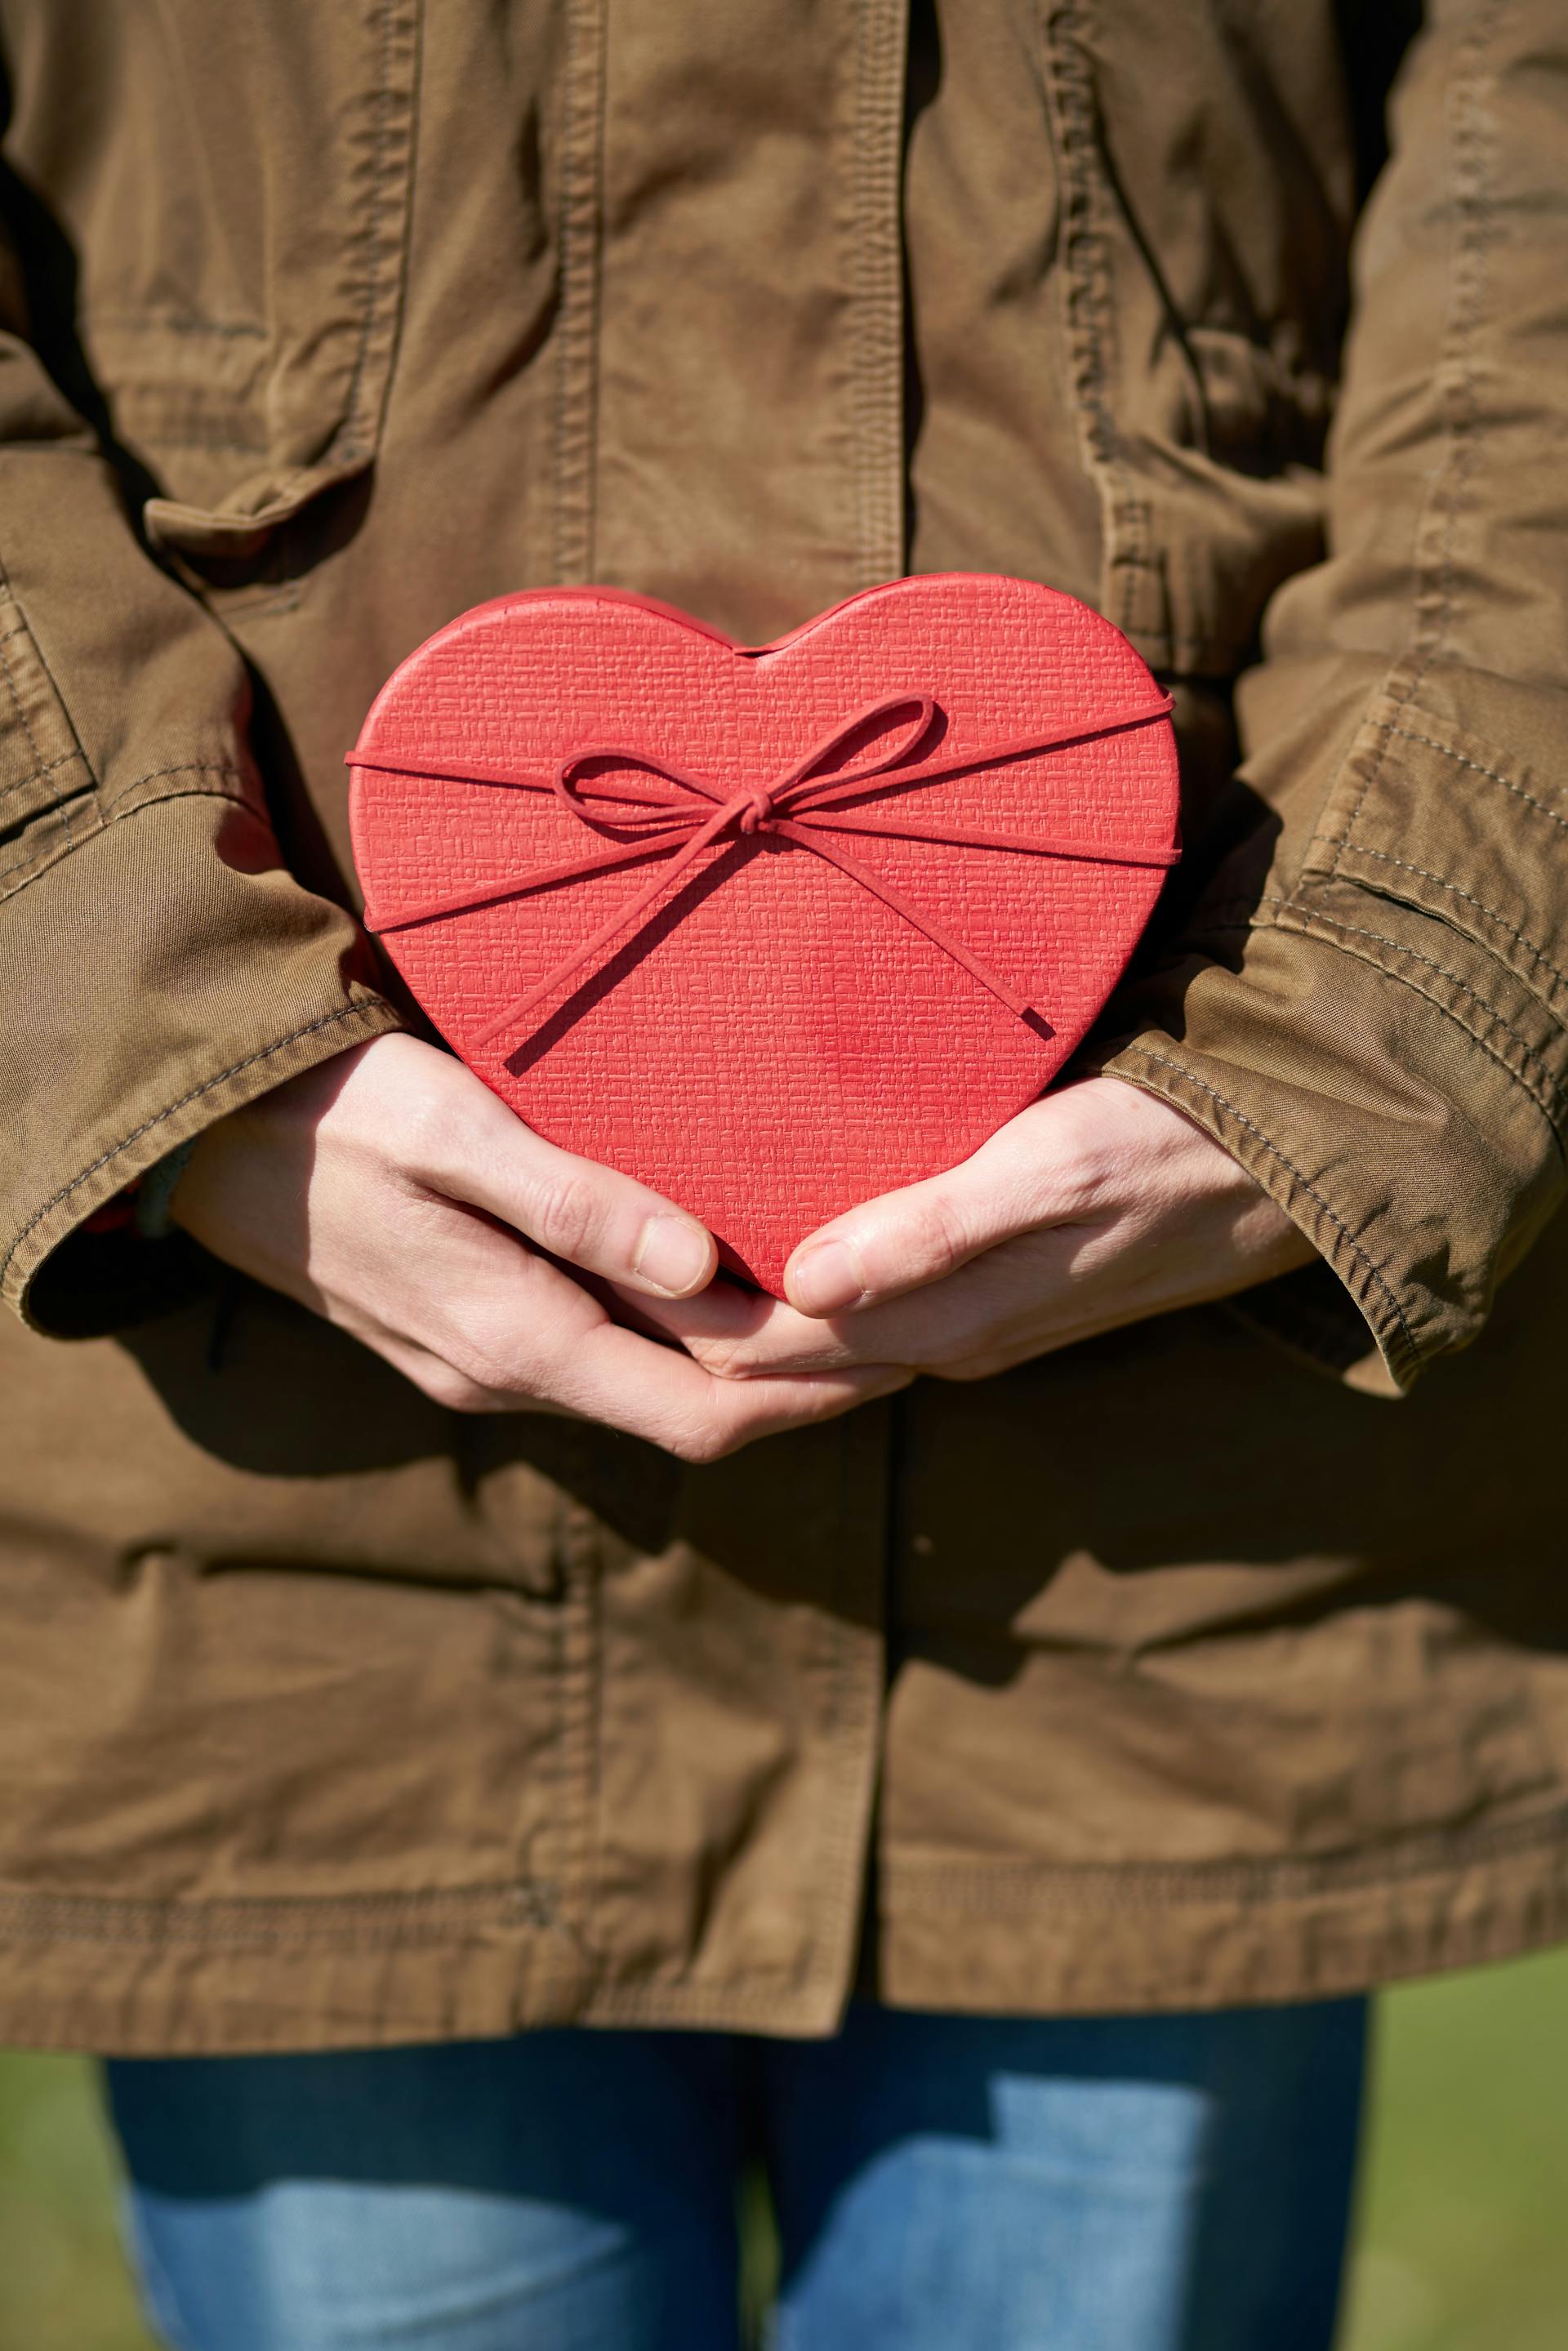 Personne tenant un cadeau en forme de cœur | Source : Pexels